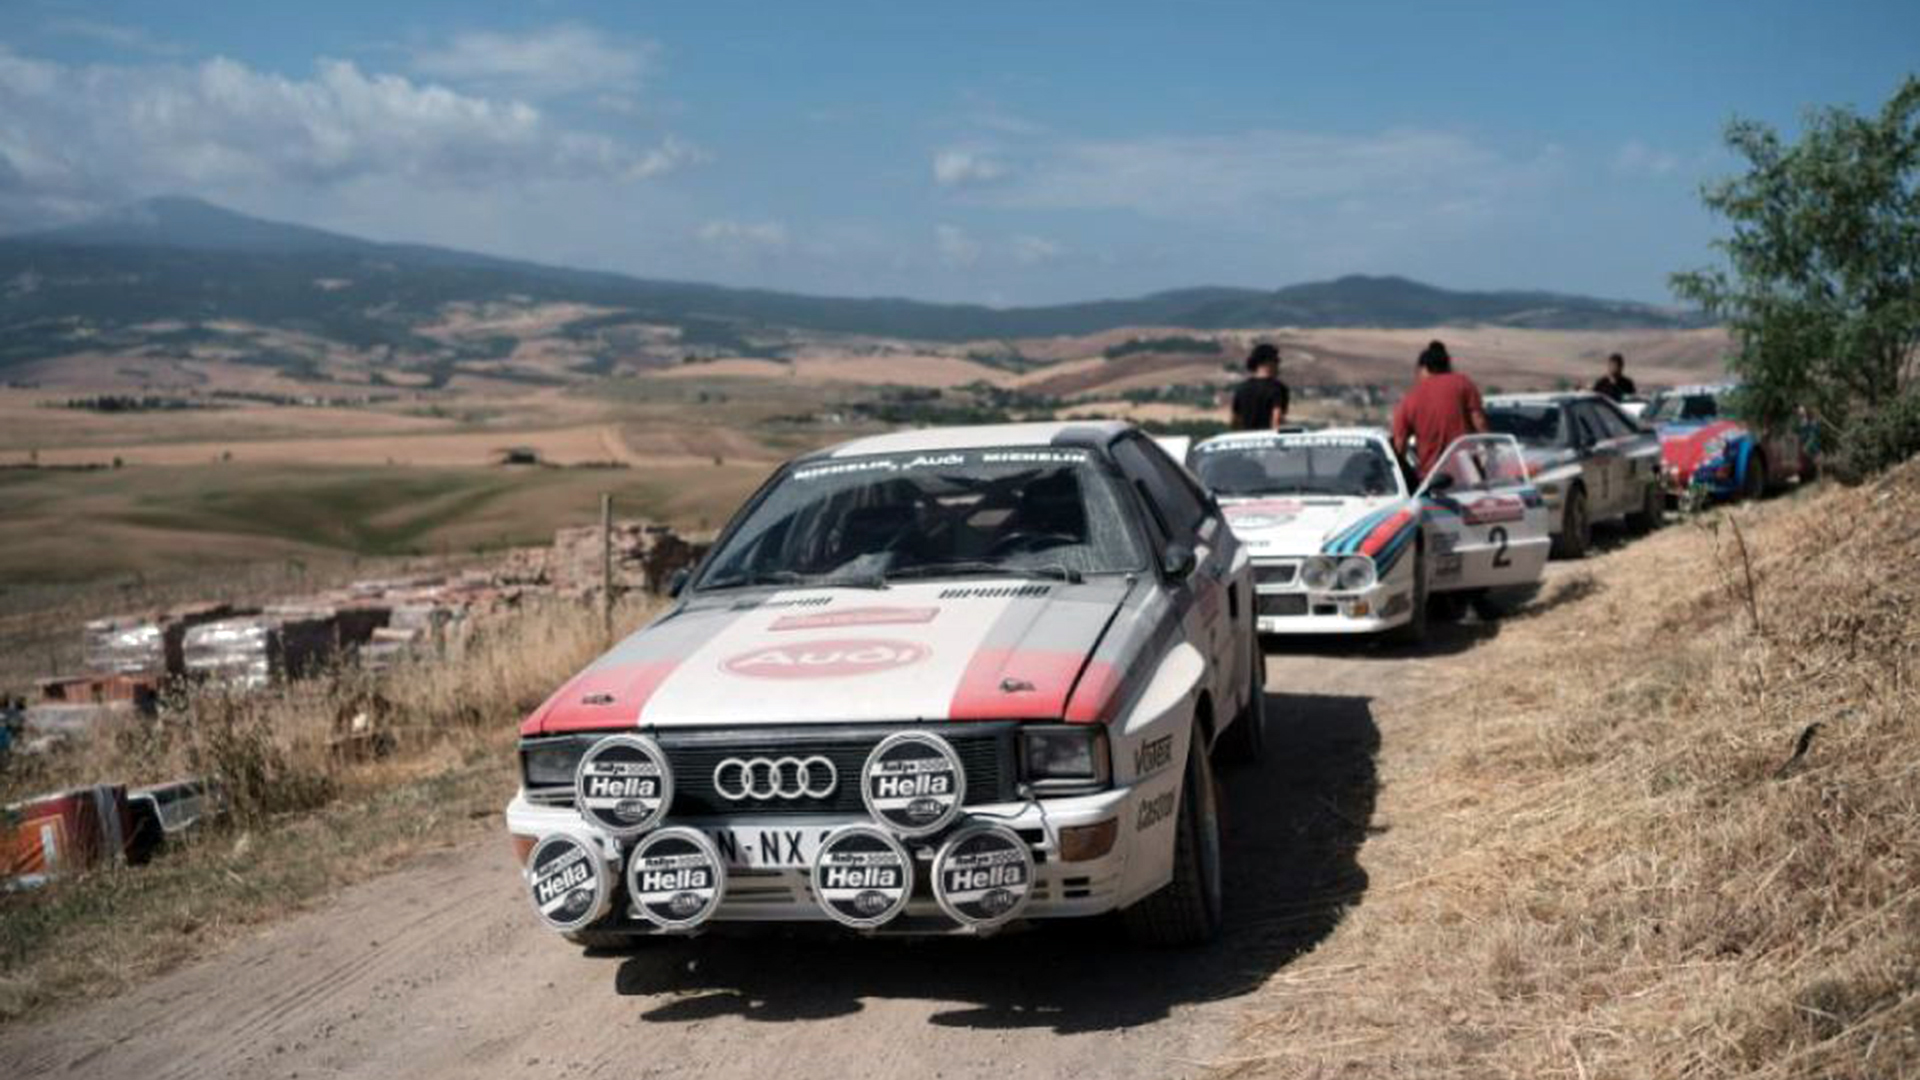 La película se rodó en los lugares originales de los rally de los años 80, como San Remo y Grecia, y con los Audi Quattro y Lancia 037 Rally originales también